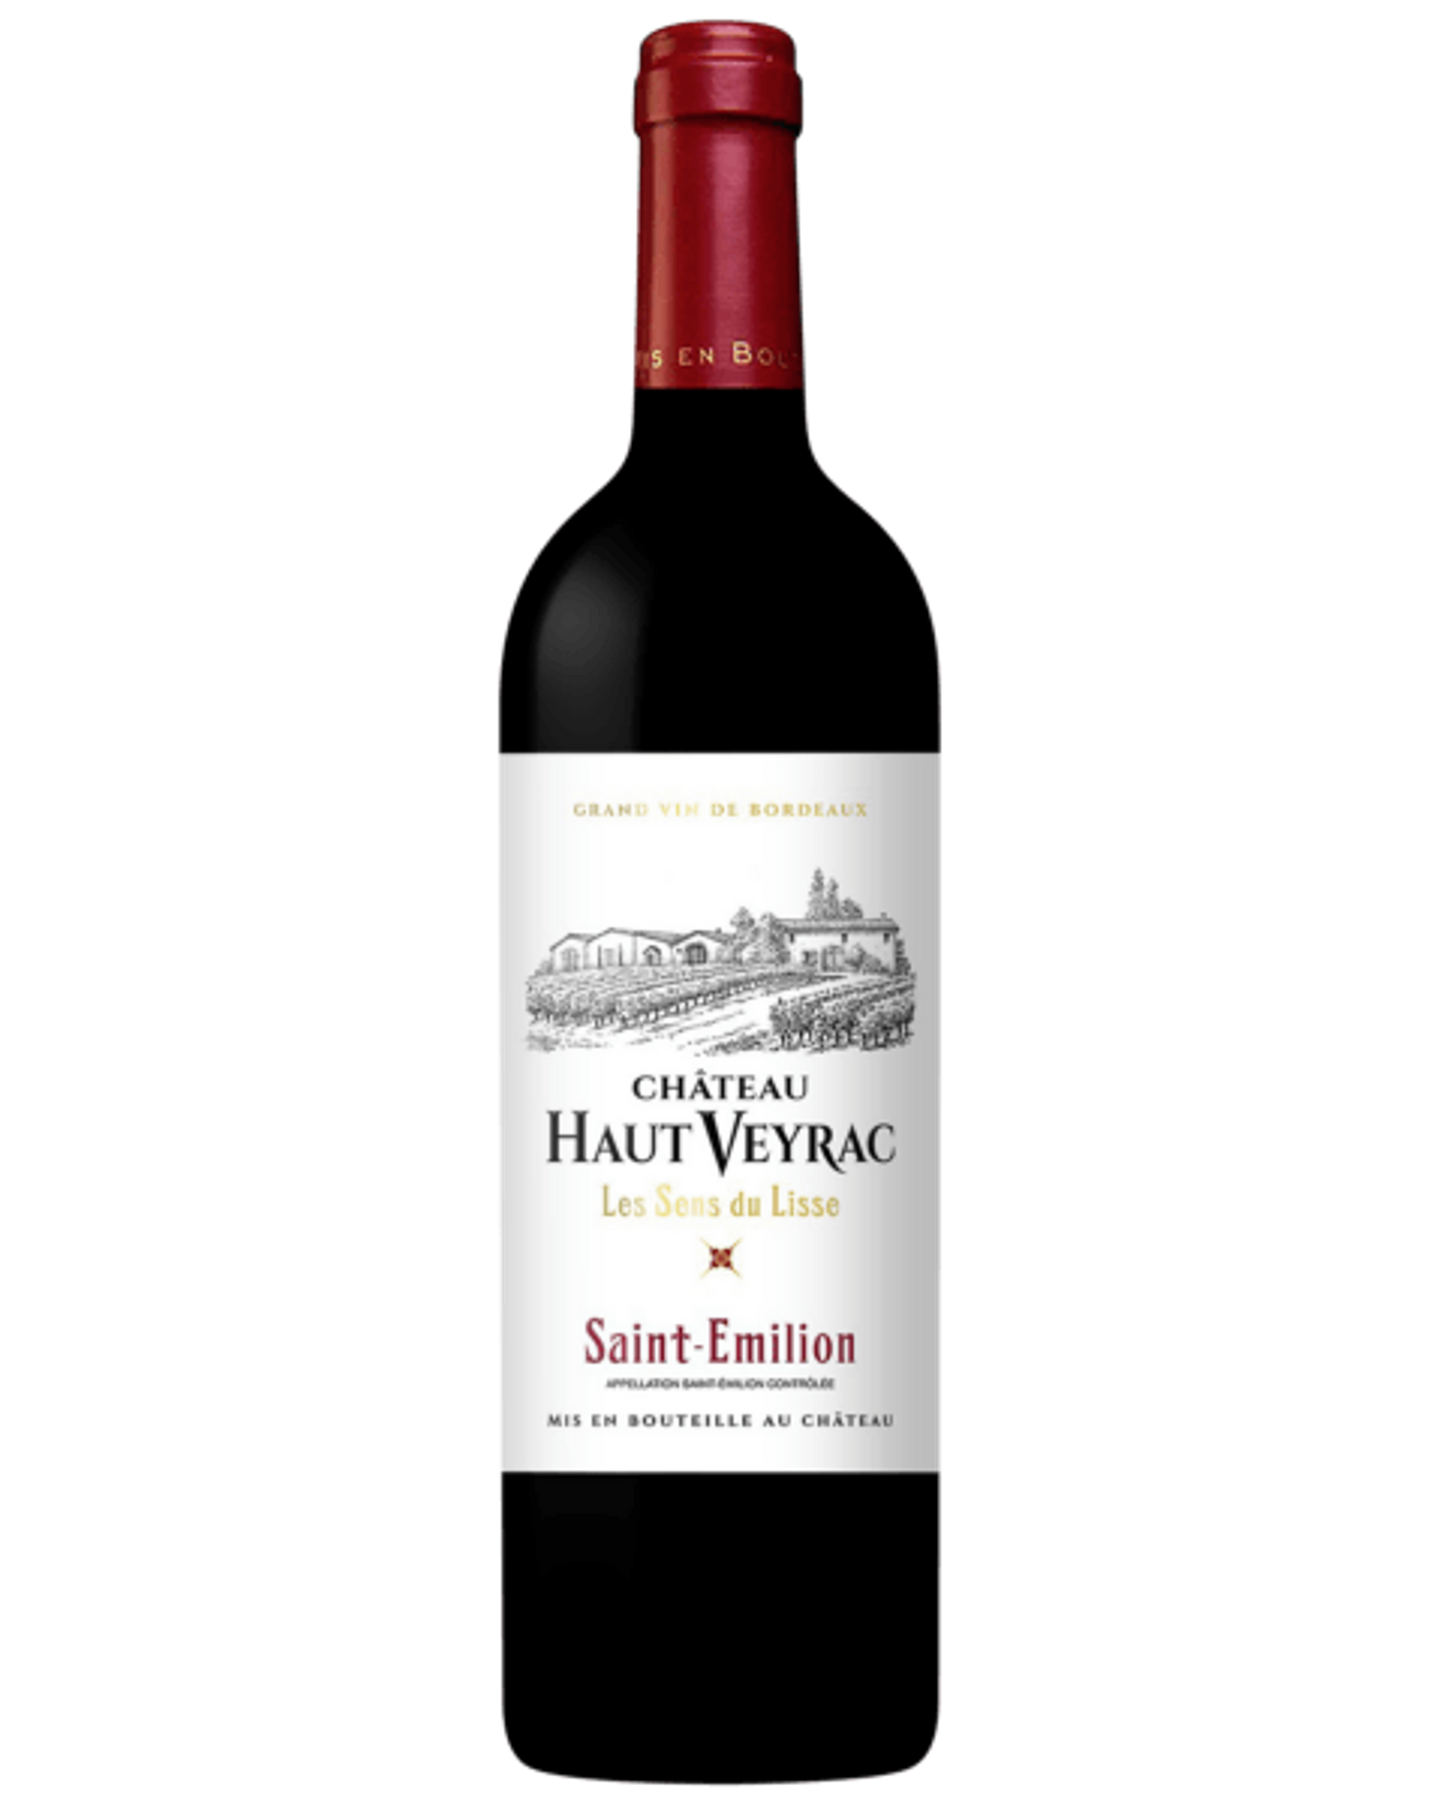 Chateau Haut Veyrac Les Sens du Lisse Saint Emilion - Premium Red Wine from Chateau Haut Veyrac - Shop now at Whiskery